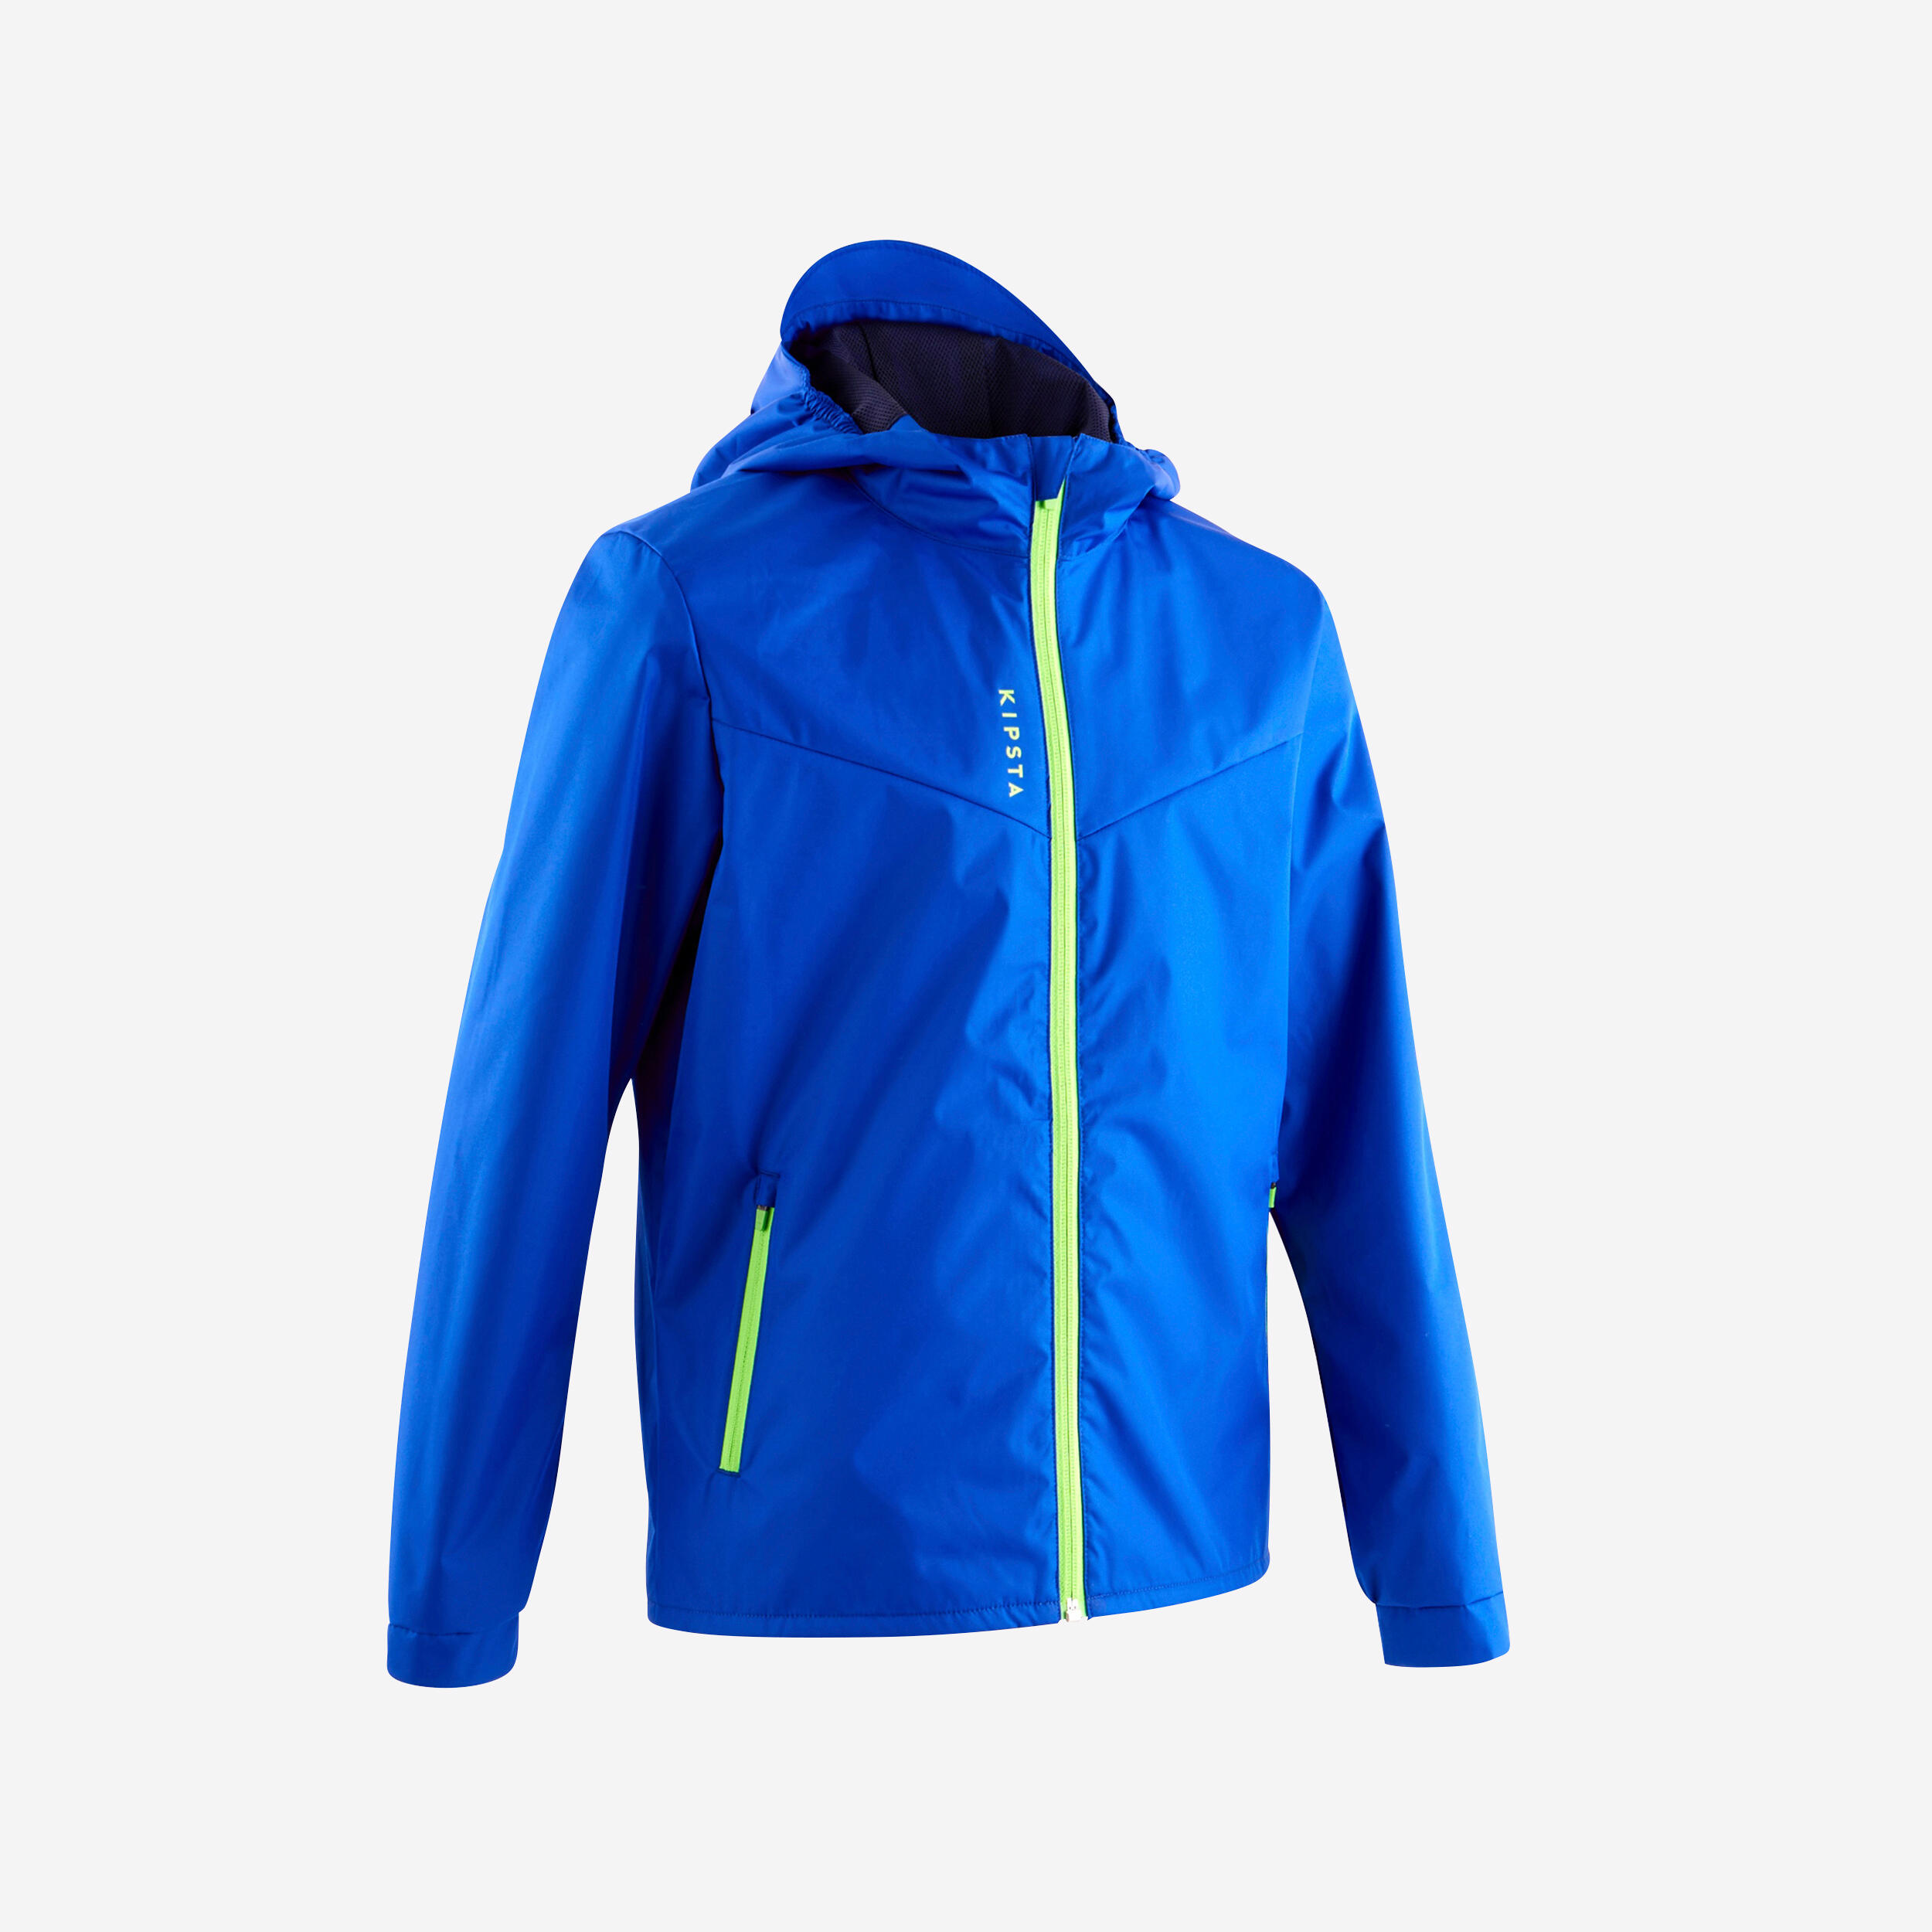 Jachetă Protecție Ploaie Fotbal T500 Bleumarin-Verde fluorescent Copii Arbo  CADOURI SPORTIVE